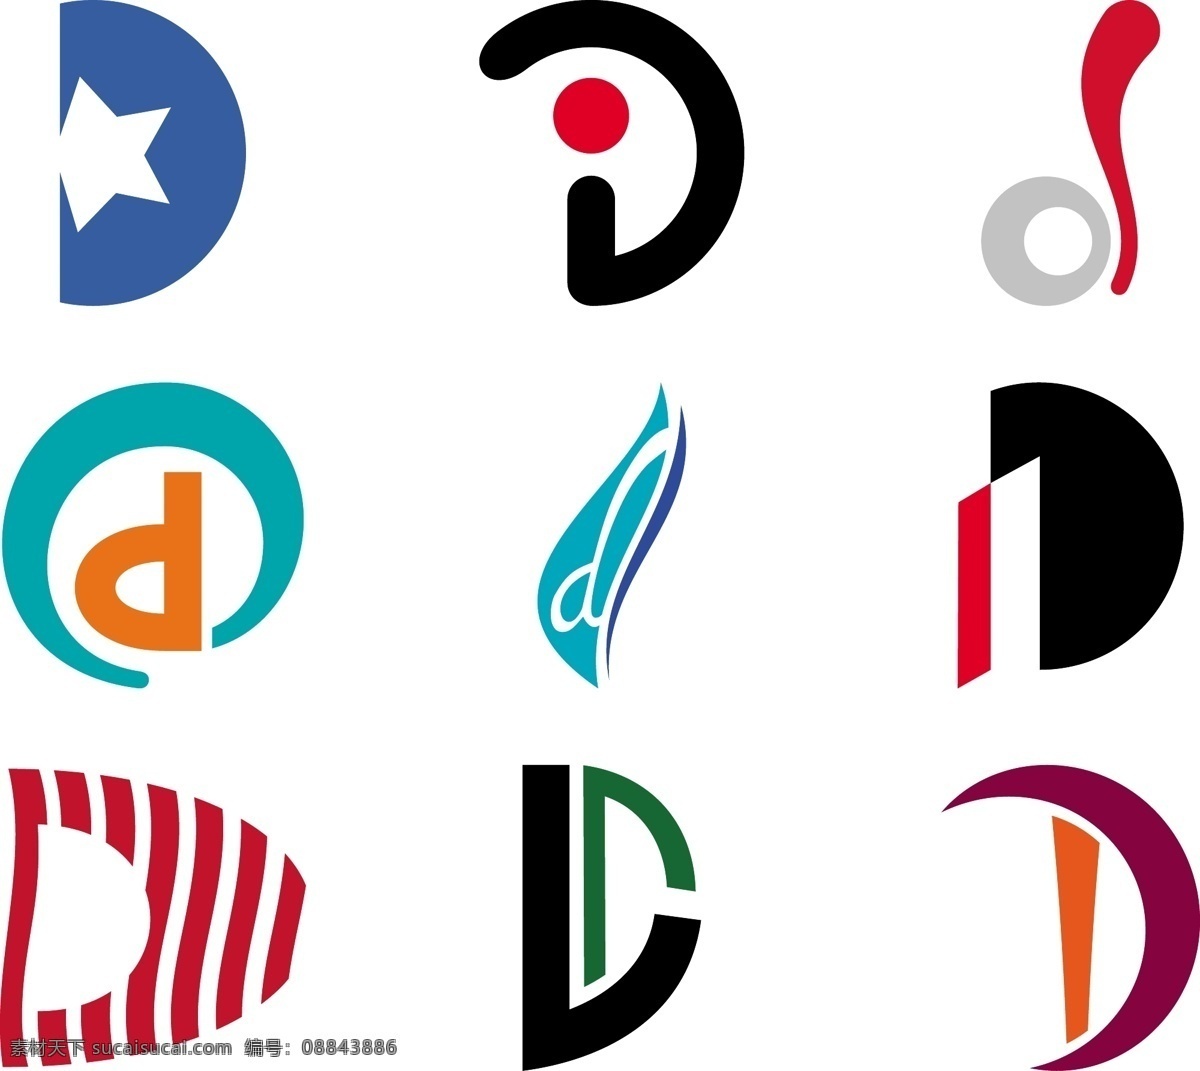 d标志 d 字母d d变形 3d digit 3d打印 3d技术 dj jd dl ol id od do logo设计